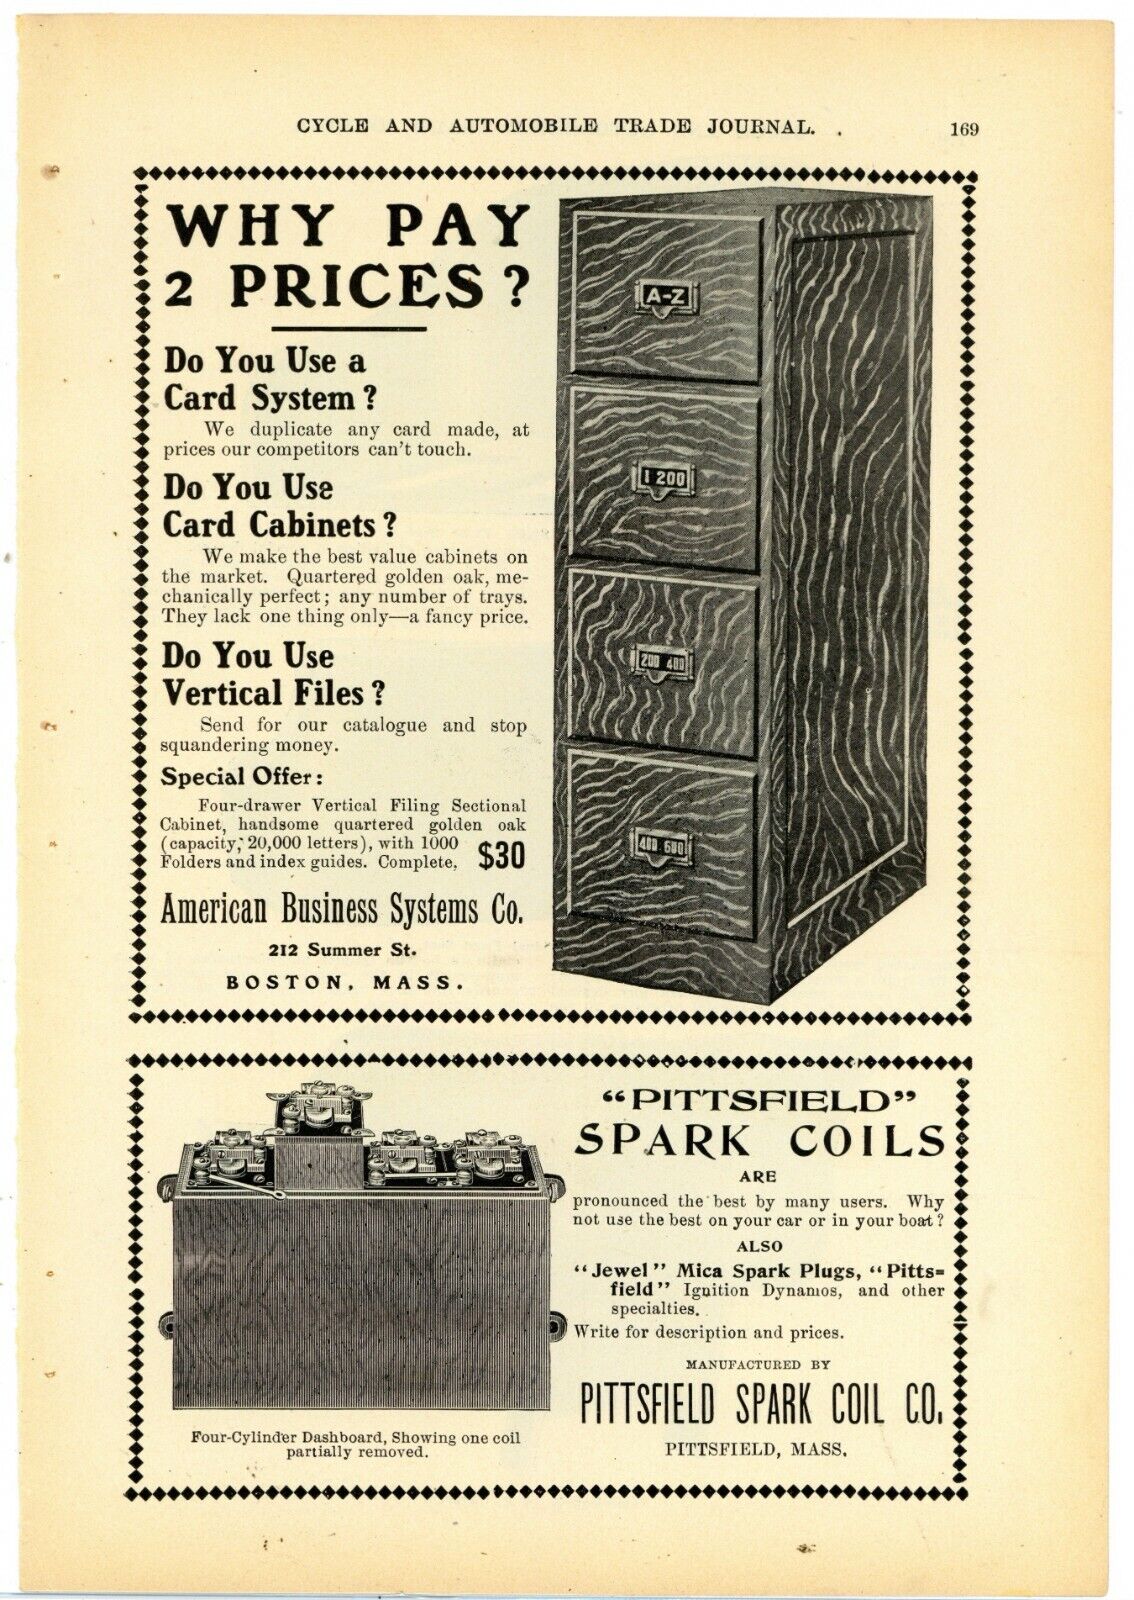 1904 American Business Systems Co. Ad: Golden Oak File Cabinets - Boston, Ma